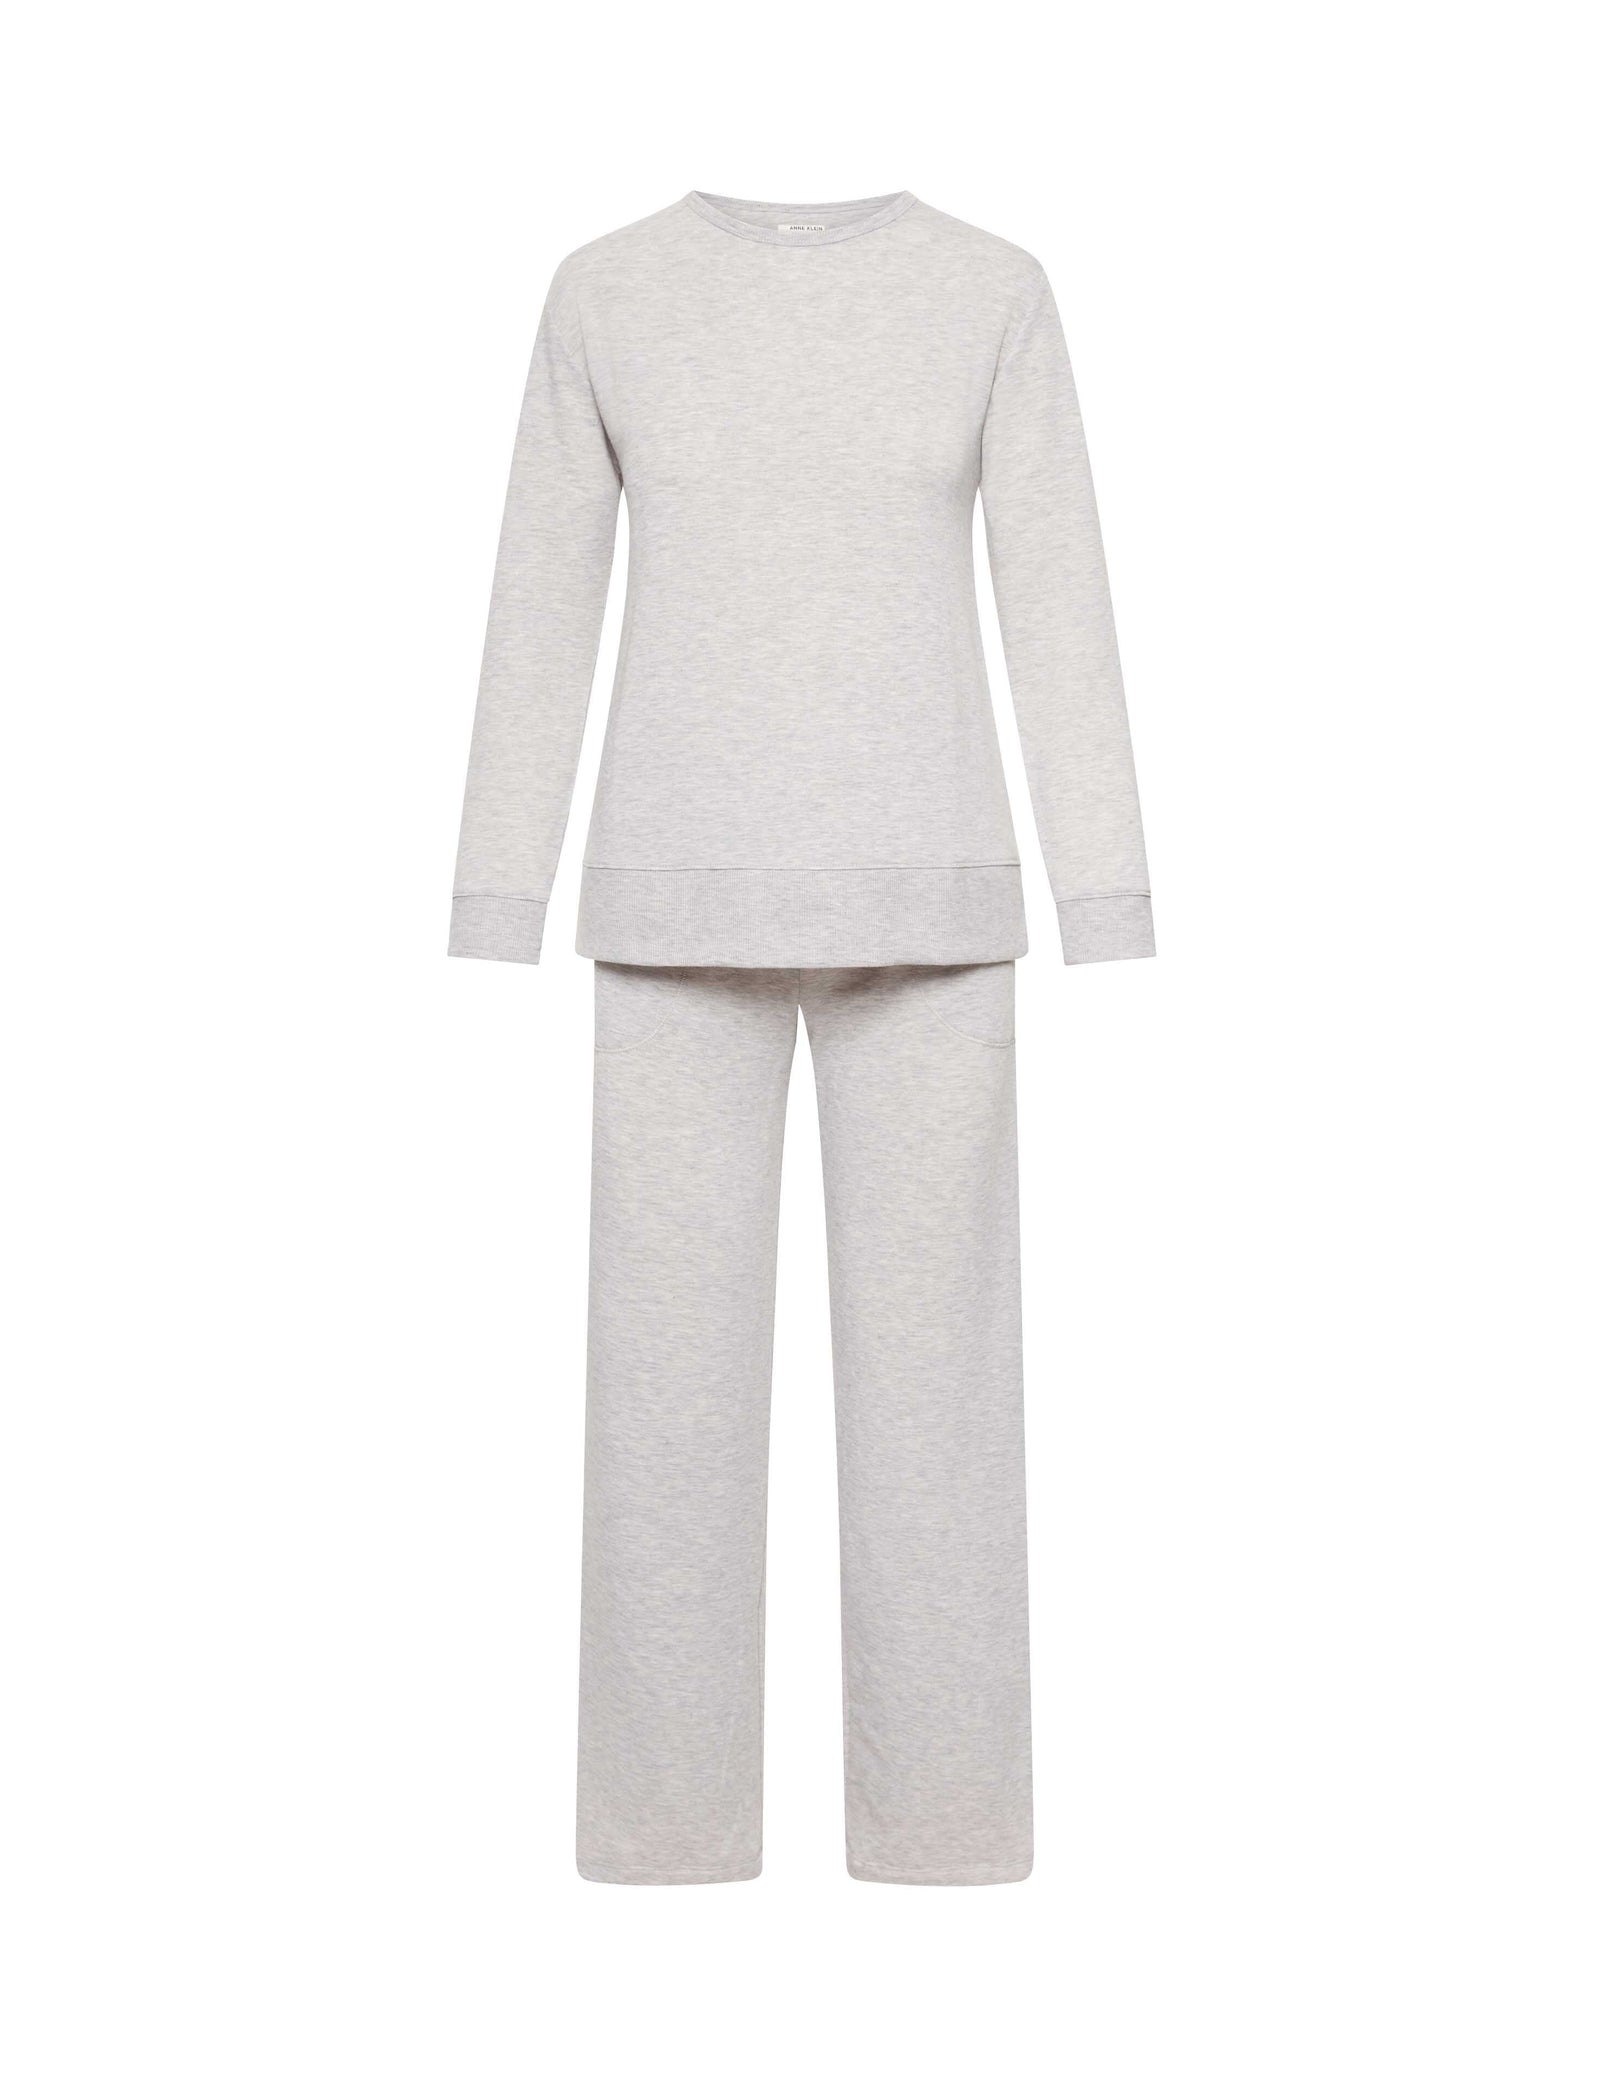 Sleepwear Pajama Sets | Anne Klein